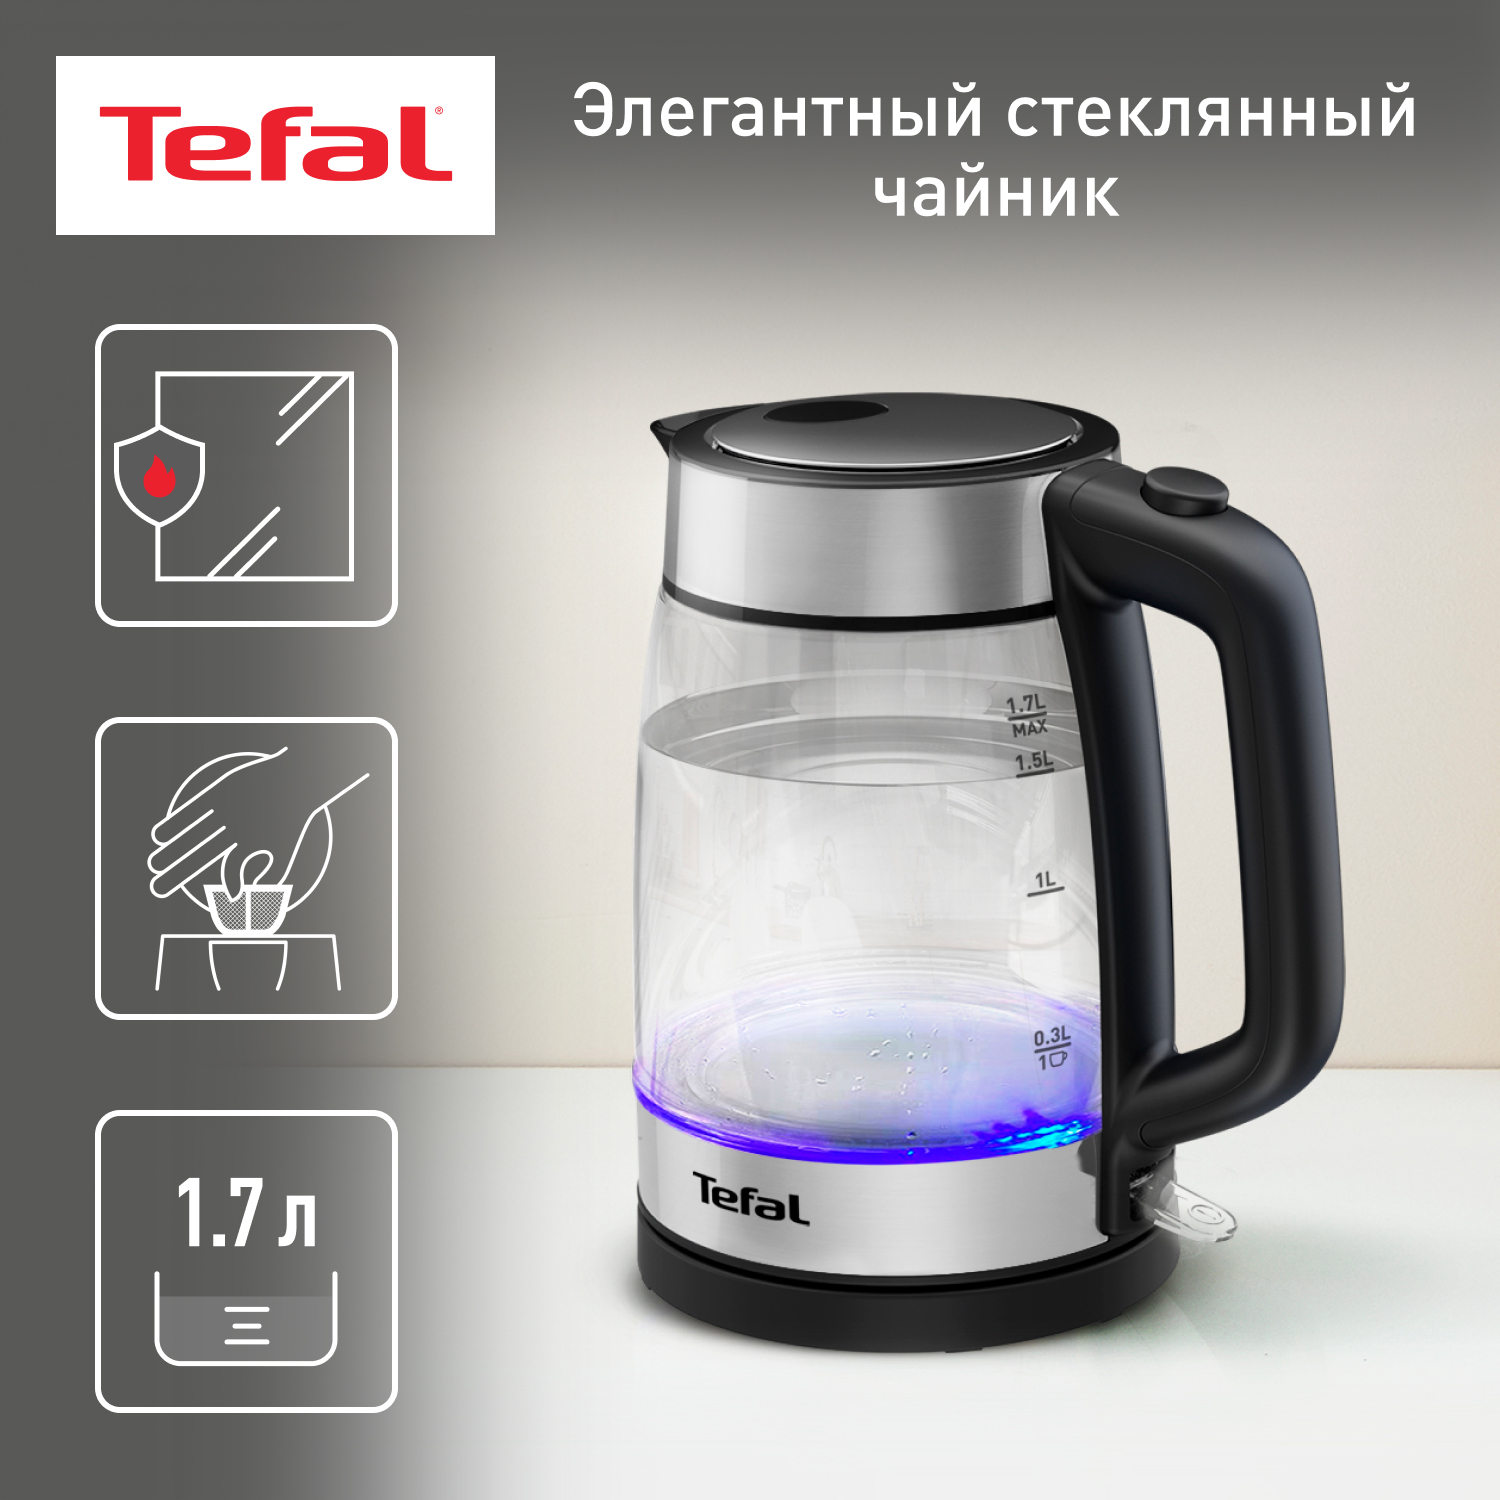 Чайник электрический Tefal KI700830 1.7 л прозрачный, серебристый, черный - купить в М.видео, цена на Мегамаркет